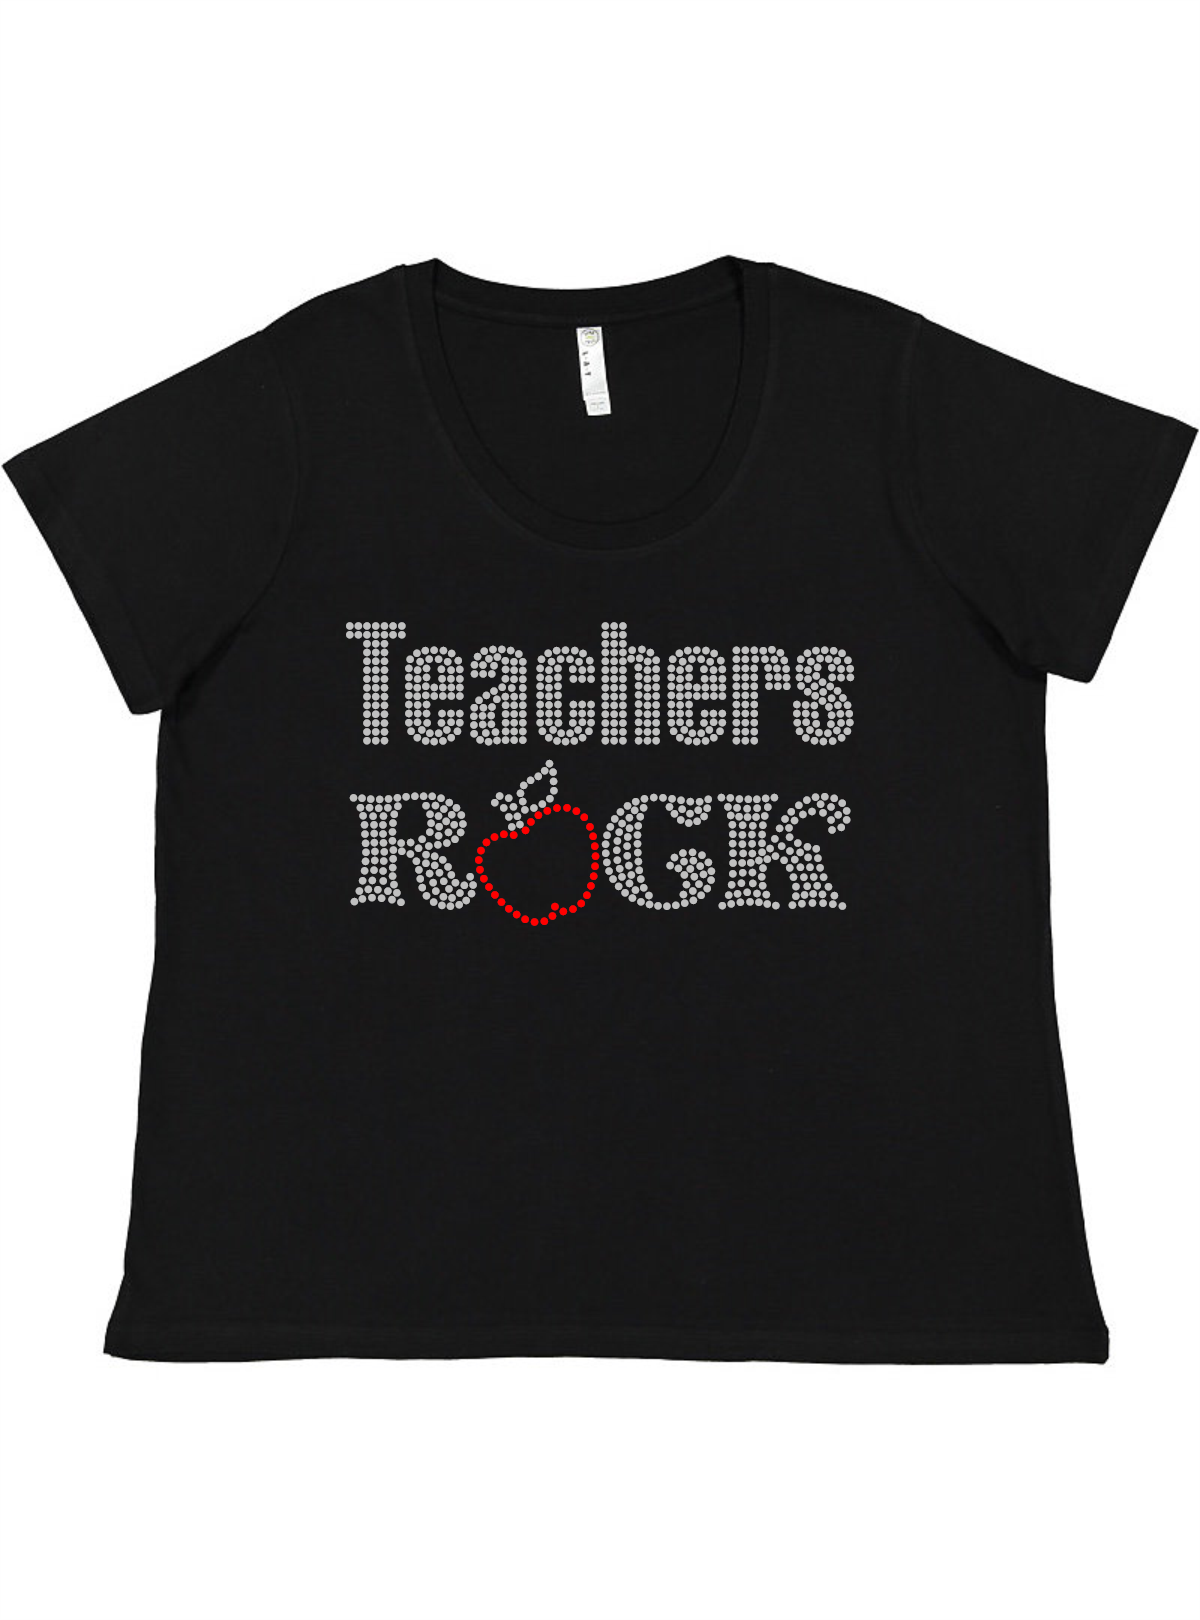 Teachers Rock Ladies Tee Ladies Shirt by Akron Pride Custom Tees | Akron Pride Custom Tees